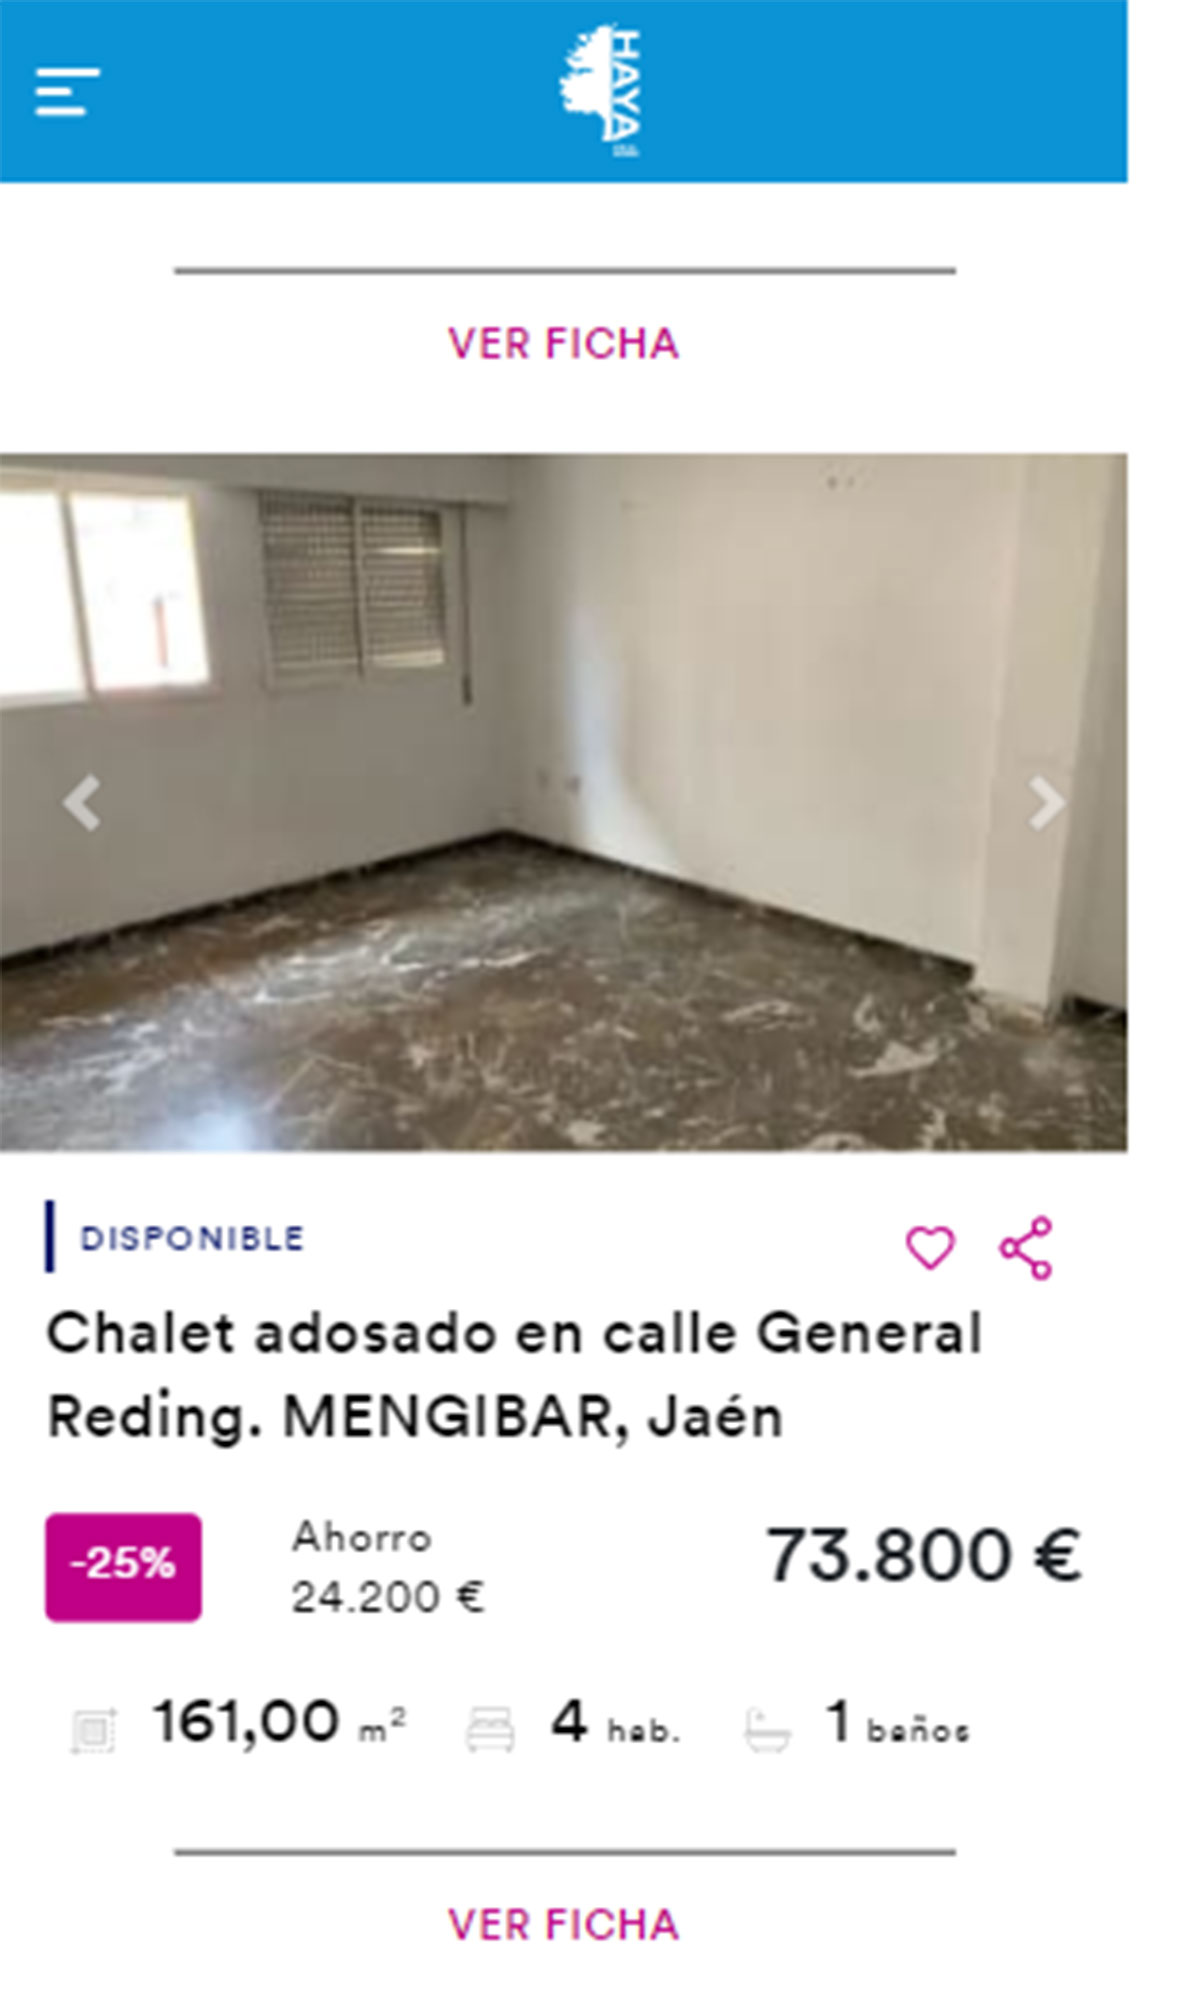 Chalet adosado en venta por 73.000 euros